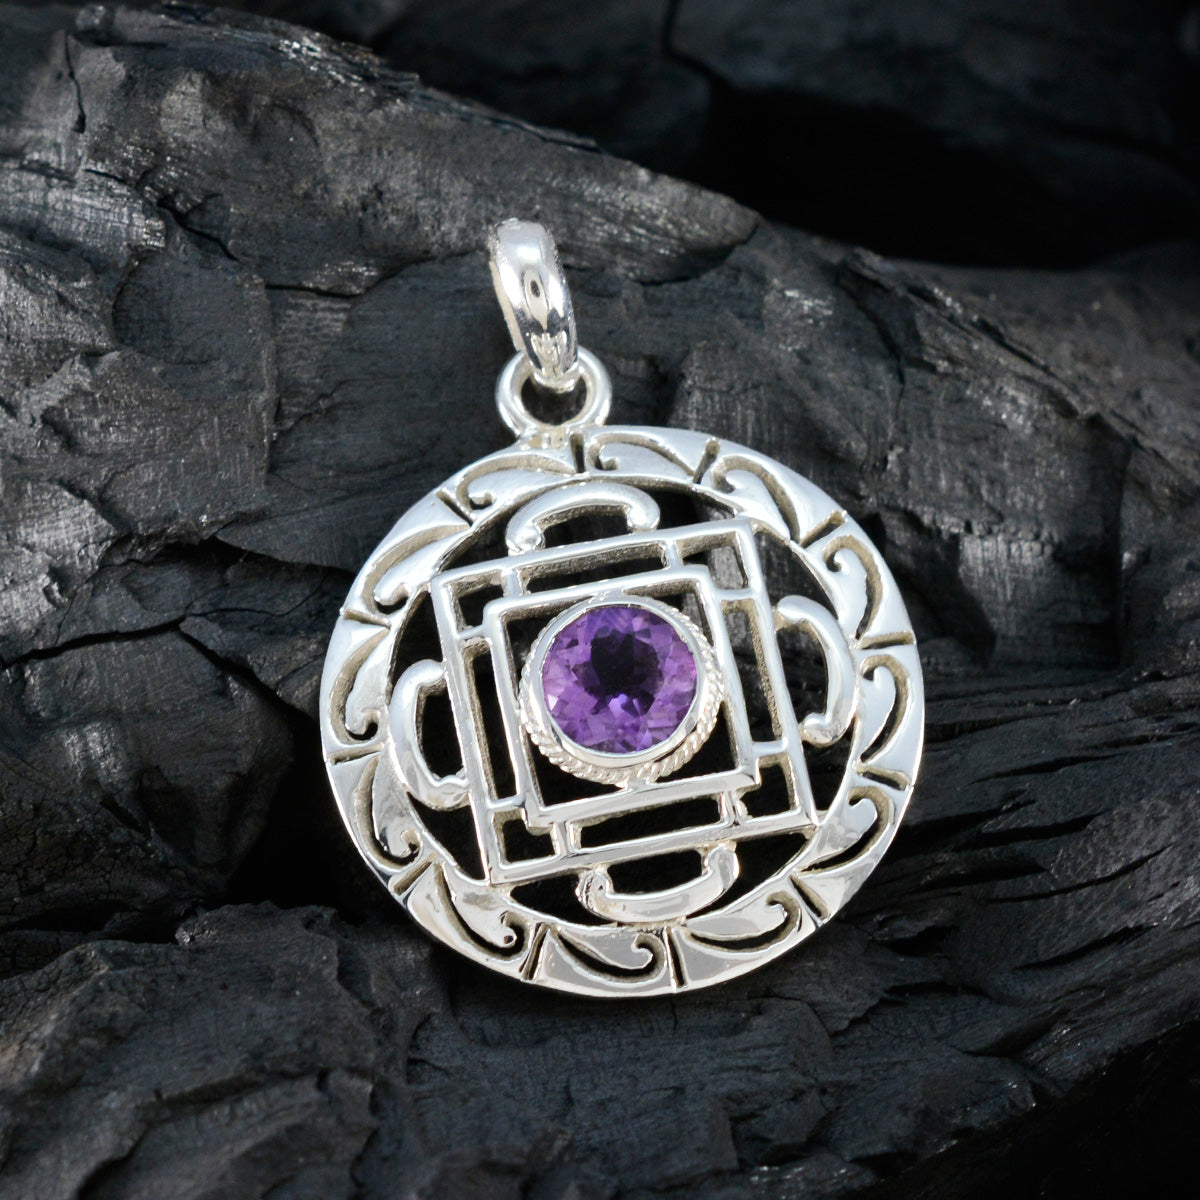 riyo горячий драгоценный камень круглый граненый фиолетовый аметист серебряный кулон 1003 пробы подарок на день учителя